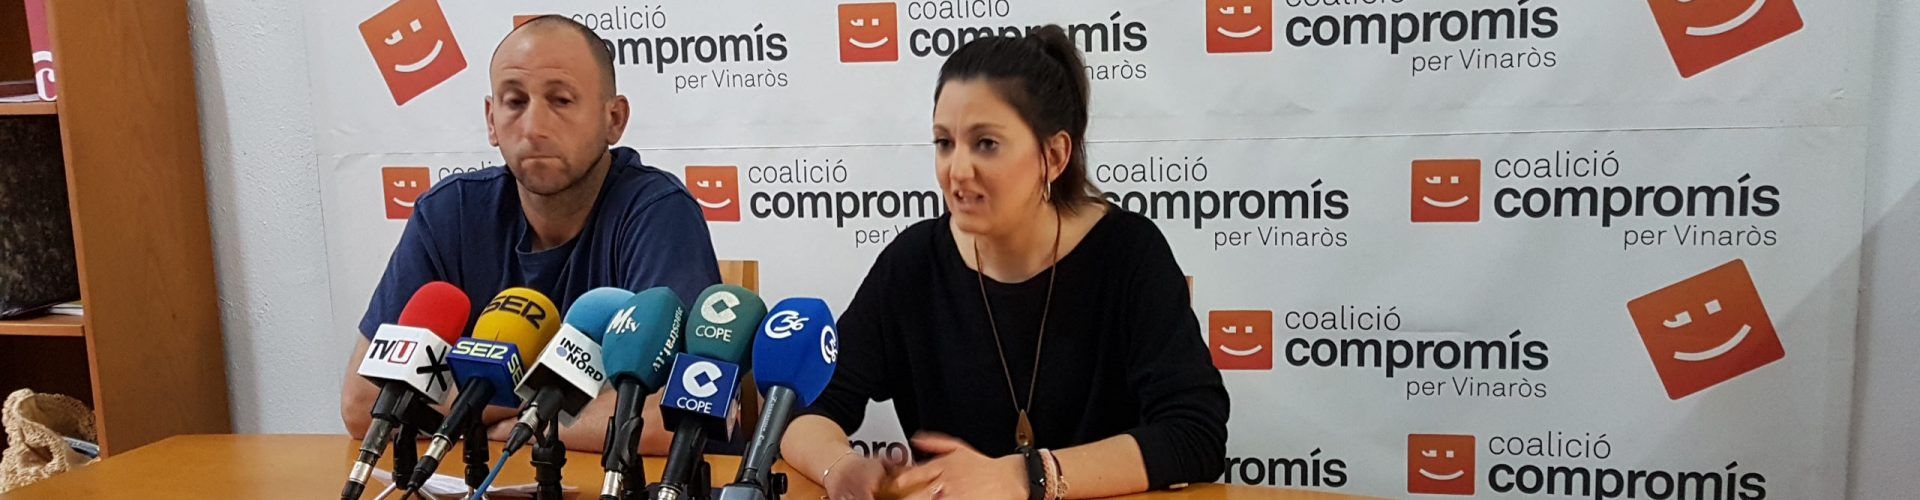 Compromís Vinaròs abre “nueva etapa” tras Jordi Moliner, confiando en el pacto de gobierno